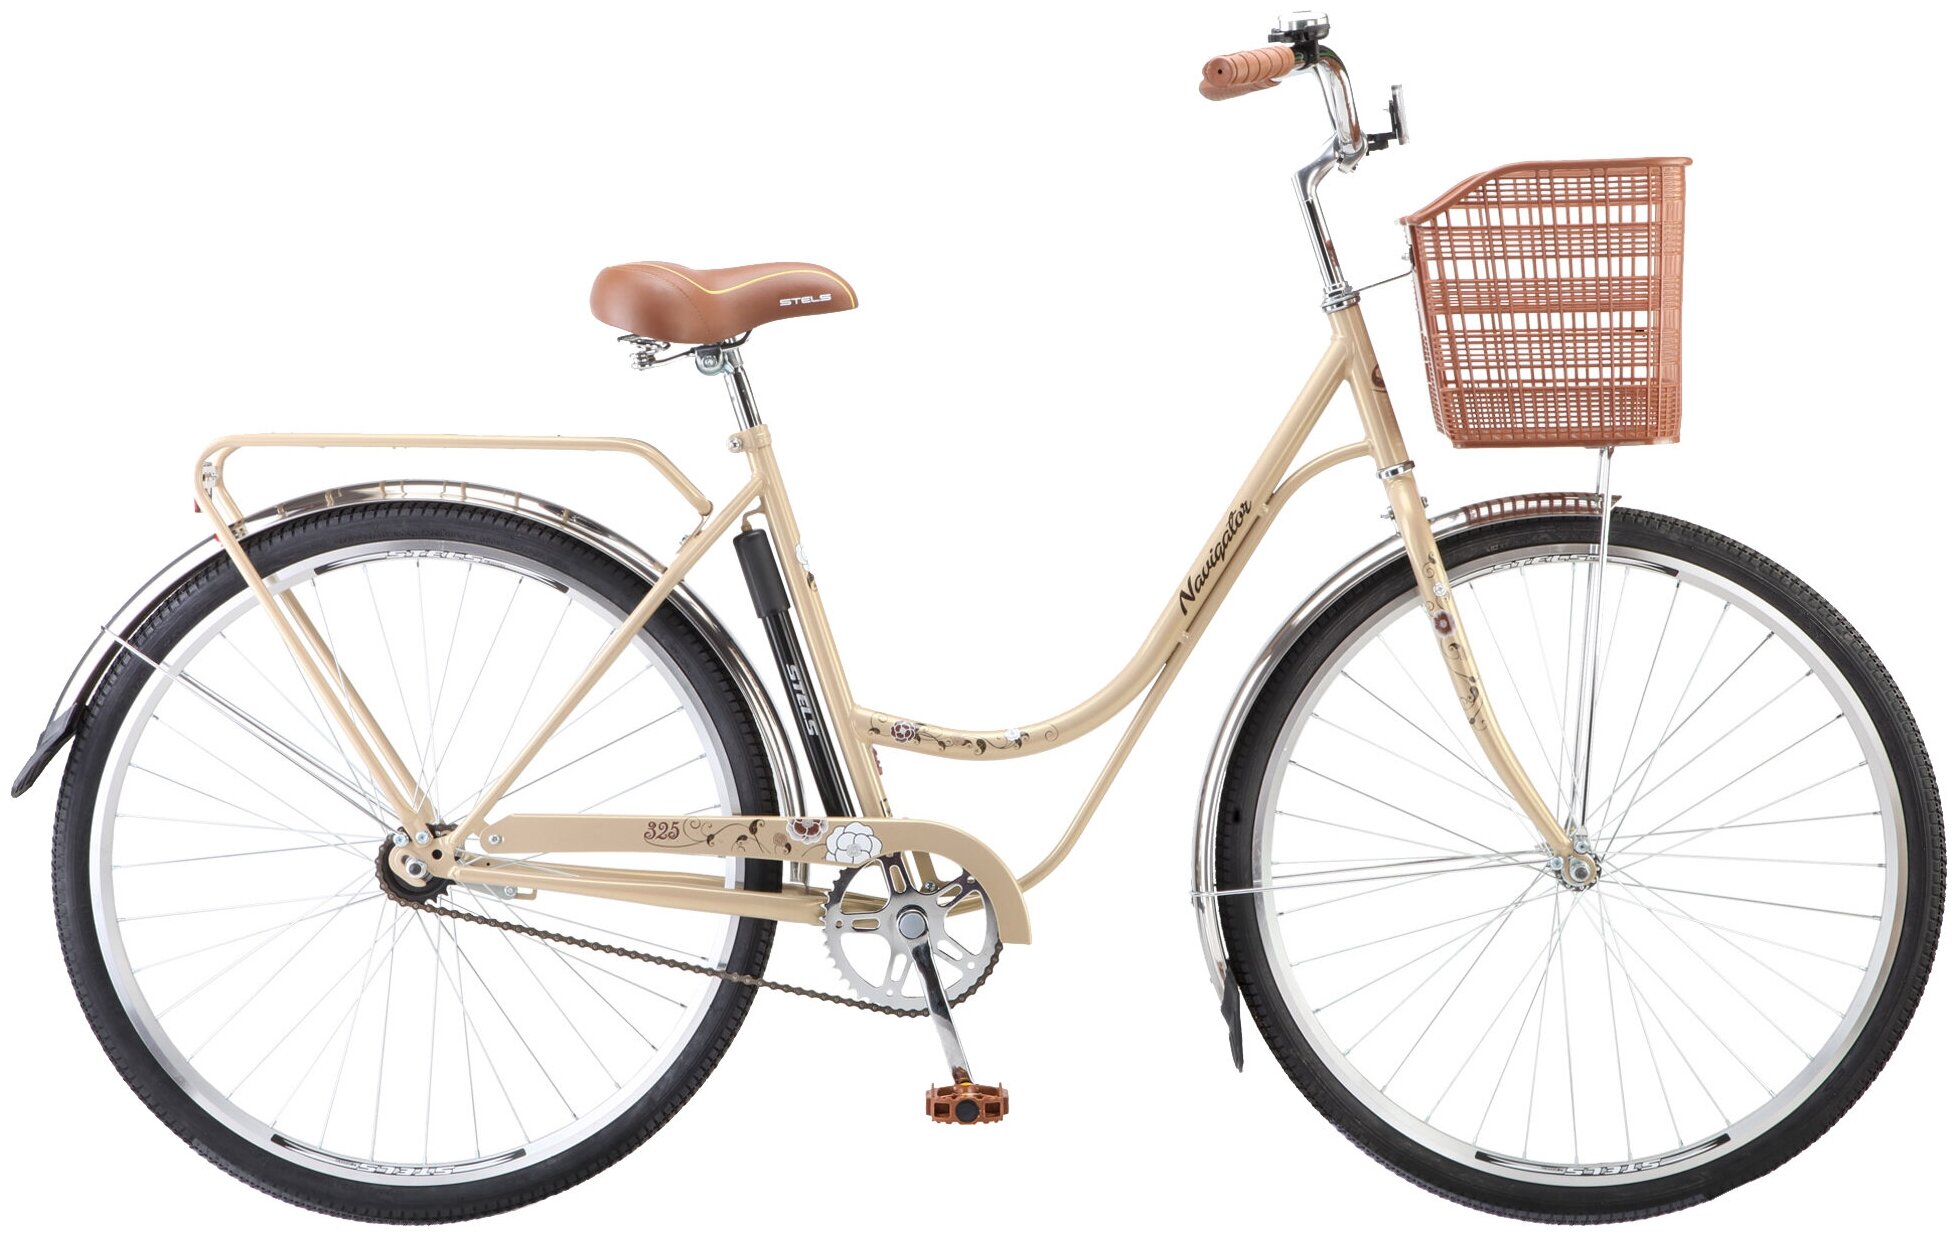 Городской велосипед STELS Navigator 325 28 Z010 (2018) светло-бежевый/коричневый 20" (требует финальной сборки)